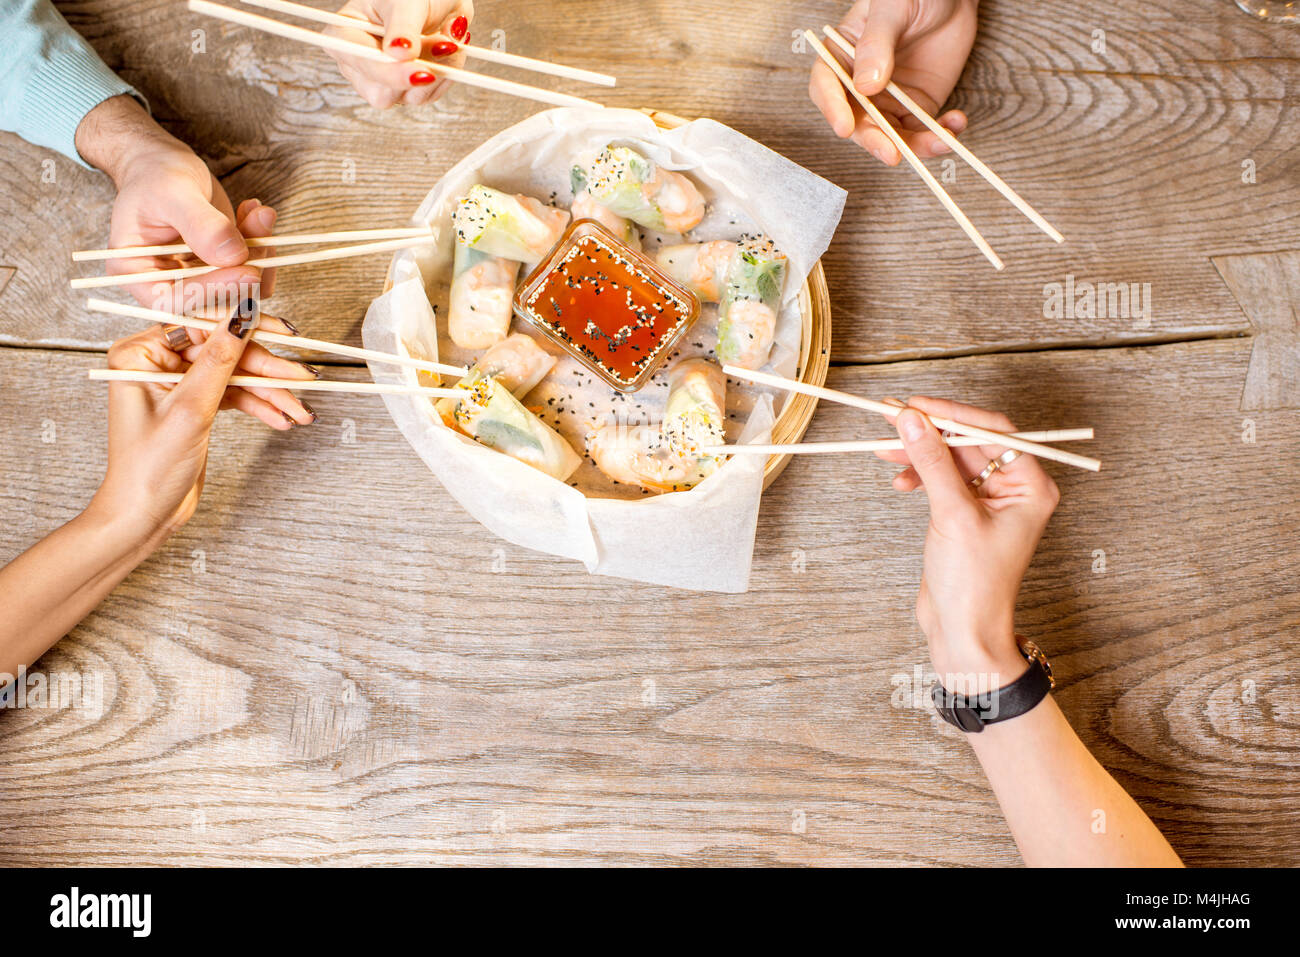 Essen mit Stäbchen Reis rollen Stockfotografie - Alamy